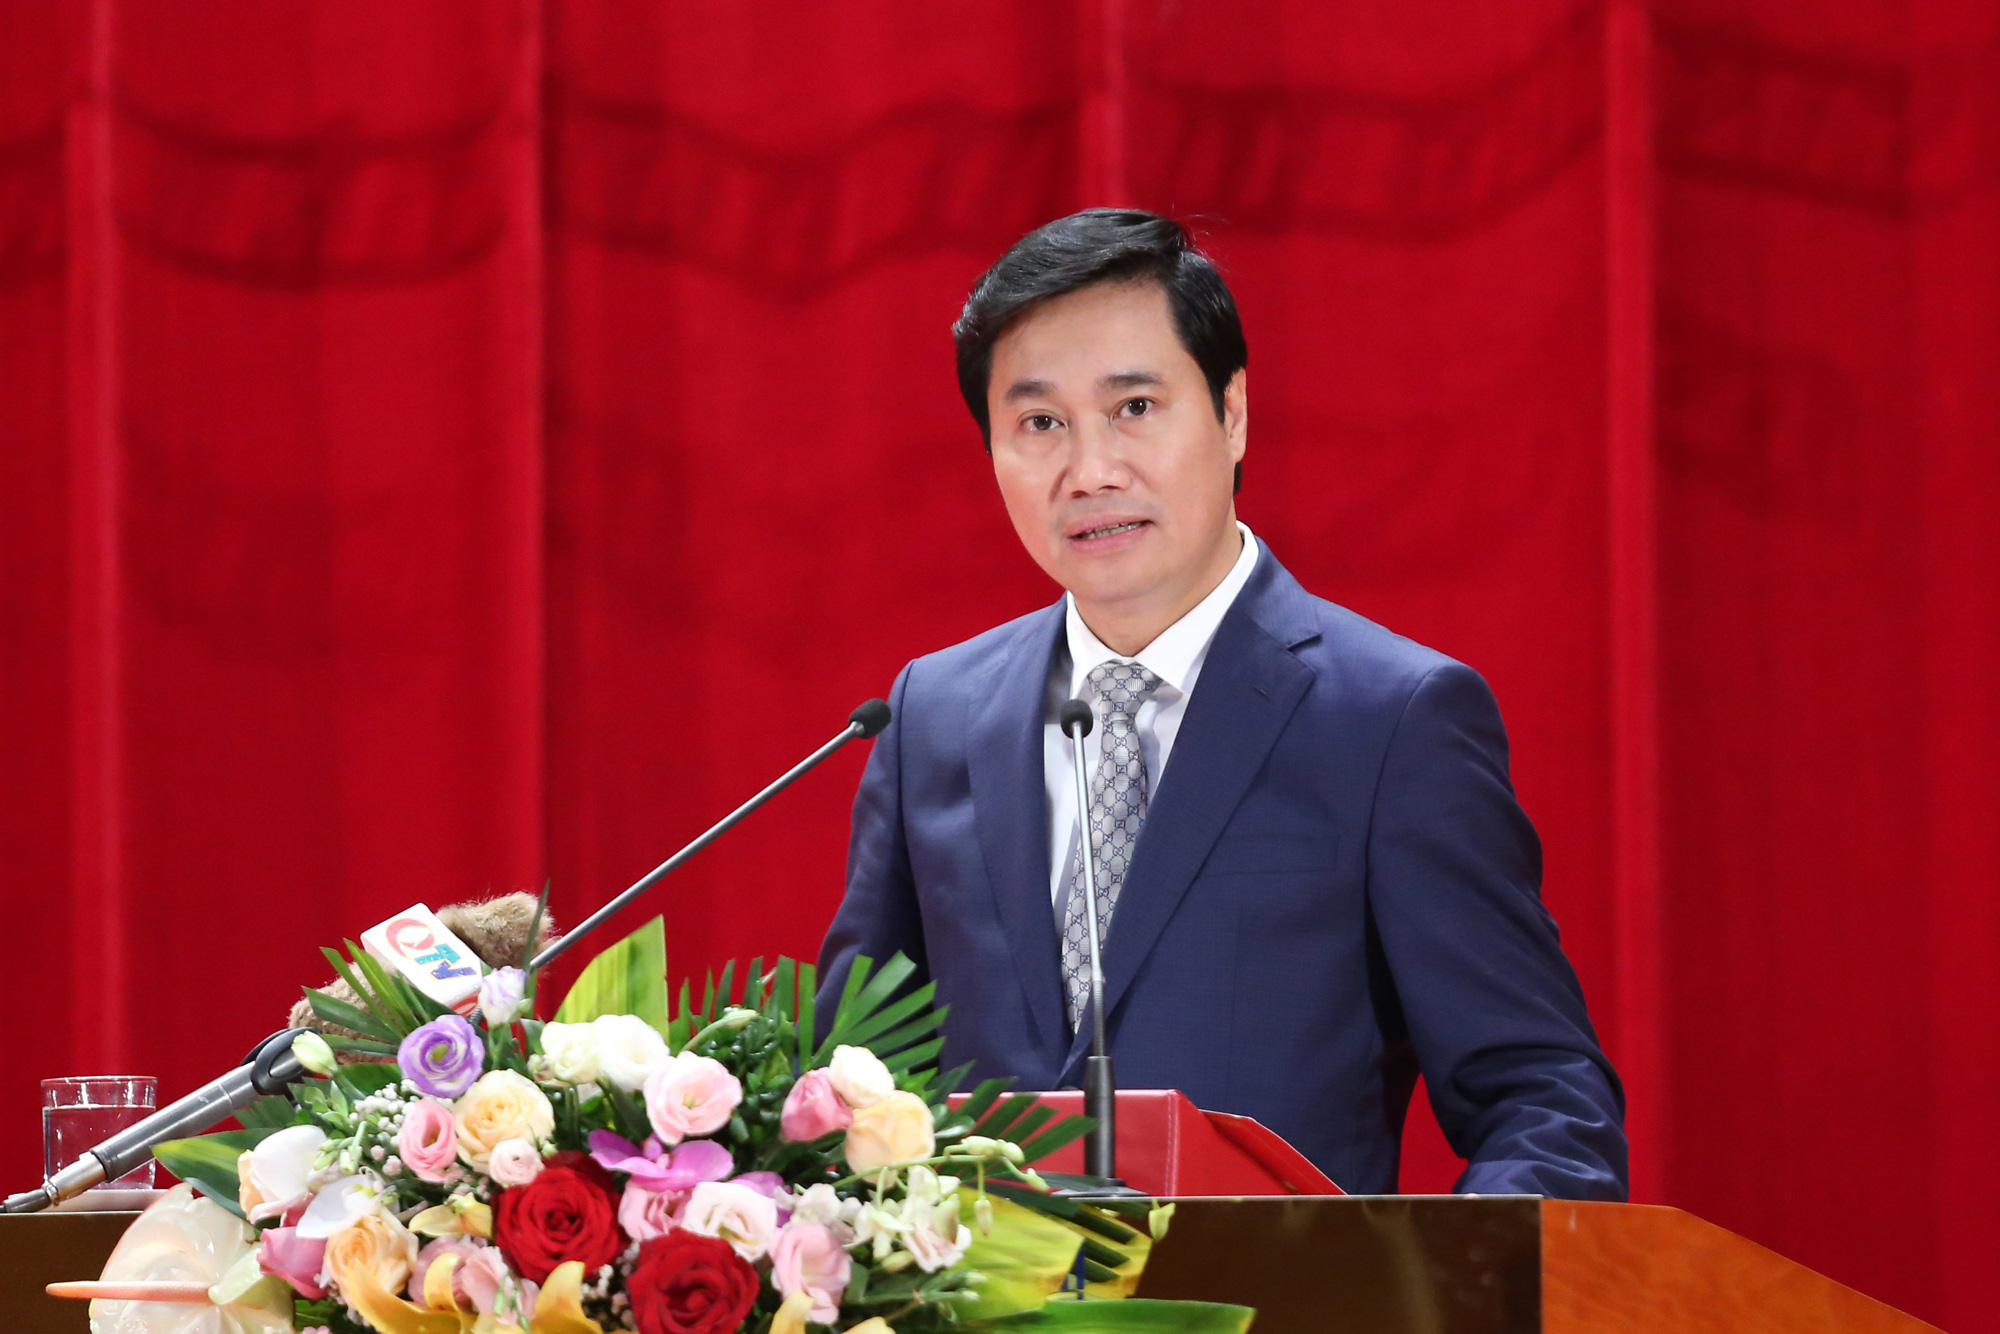 Nguyên Thứ trưởng Nguyễn Tường Văn được phê chuẩn Chủ tịch tỉnh Quảng Ninh - Ảnh 1.